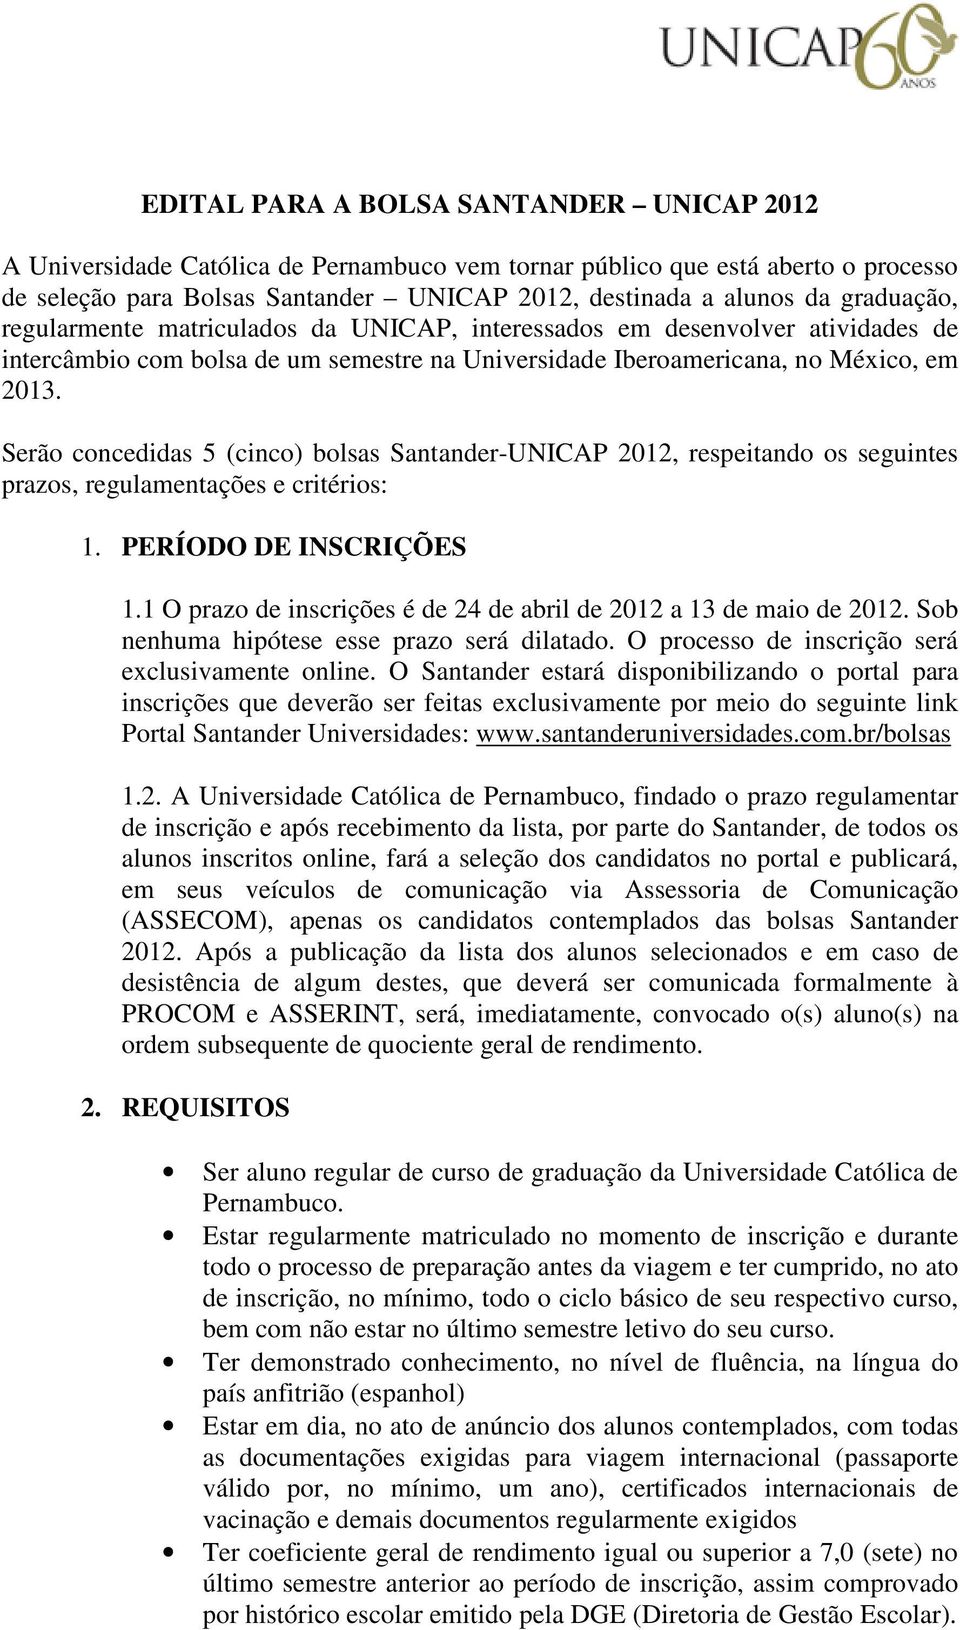 Serão concedidas 5 (cinco) bolsas Santander-UNICAP 2012, respeitando os seguintes prazos, regulamentações e critérios: 1. PERÍODO DE INSCRIÇÕES 1.